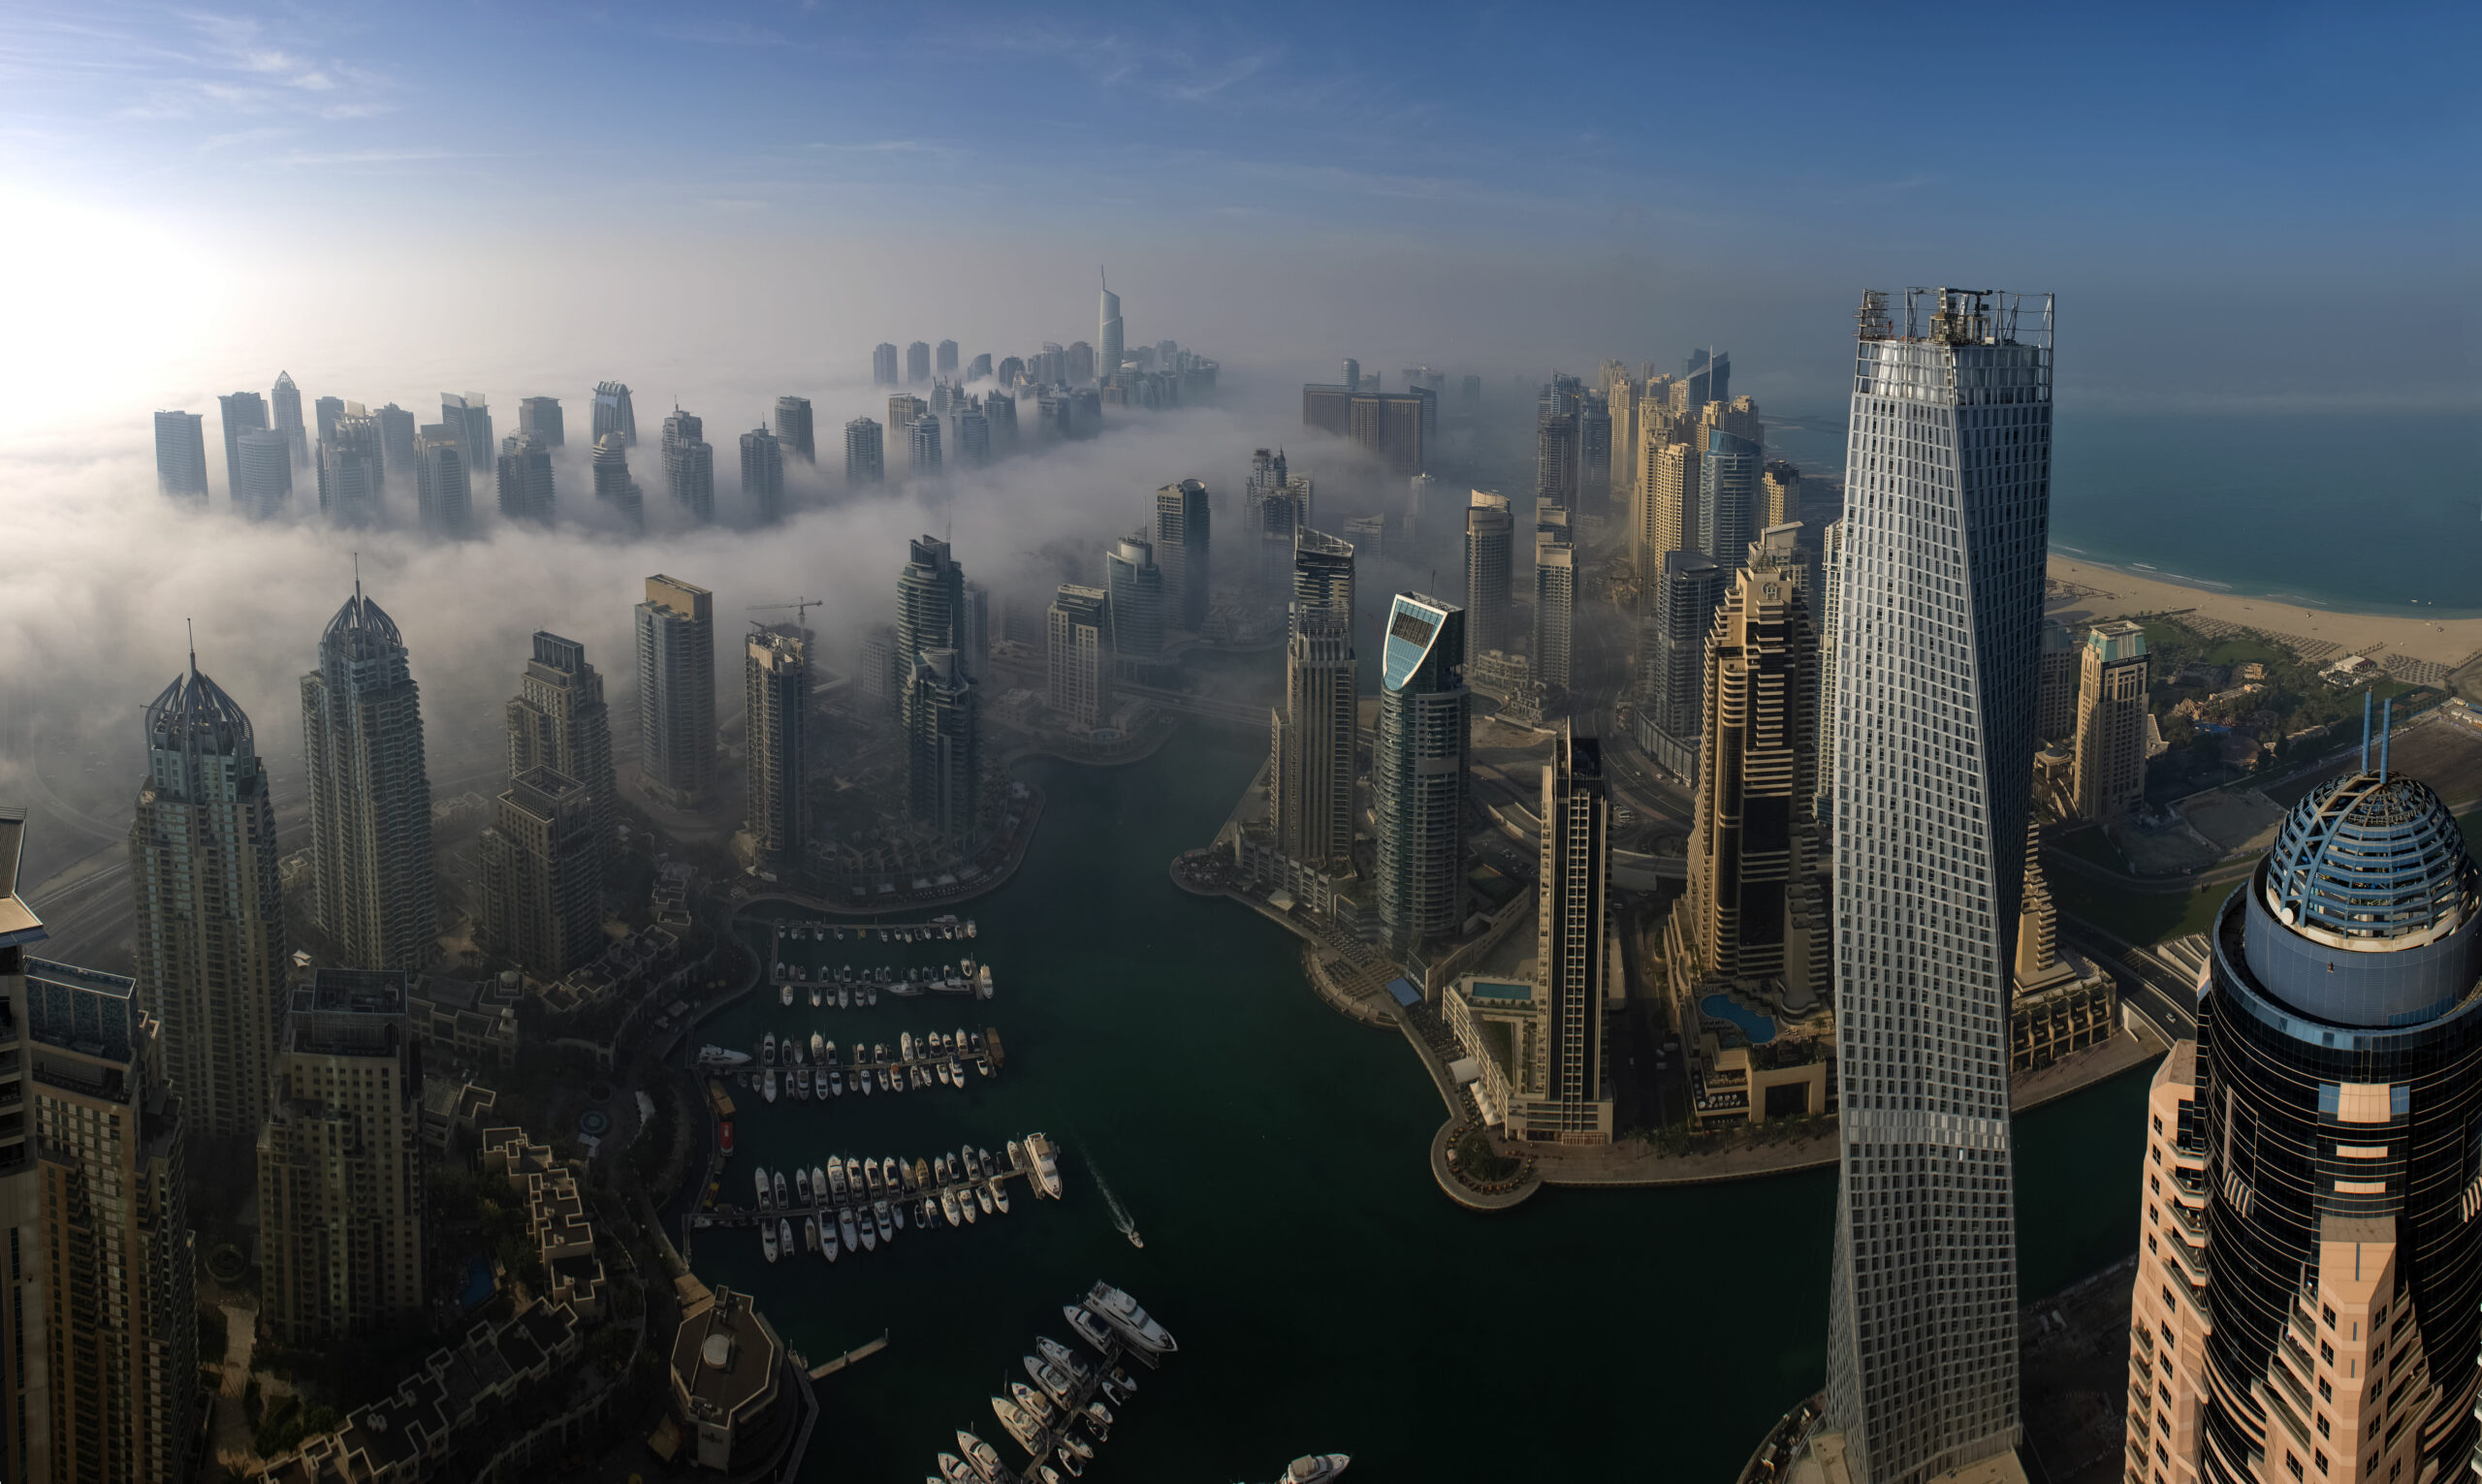 Permintaan Rusia terhadap properti Dubai melambat – namun permintaan Tiongkok meningkat, kata ketua DAMAC